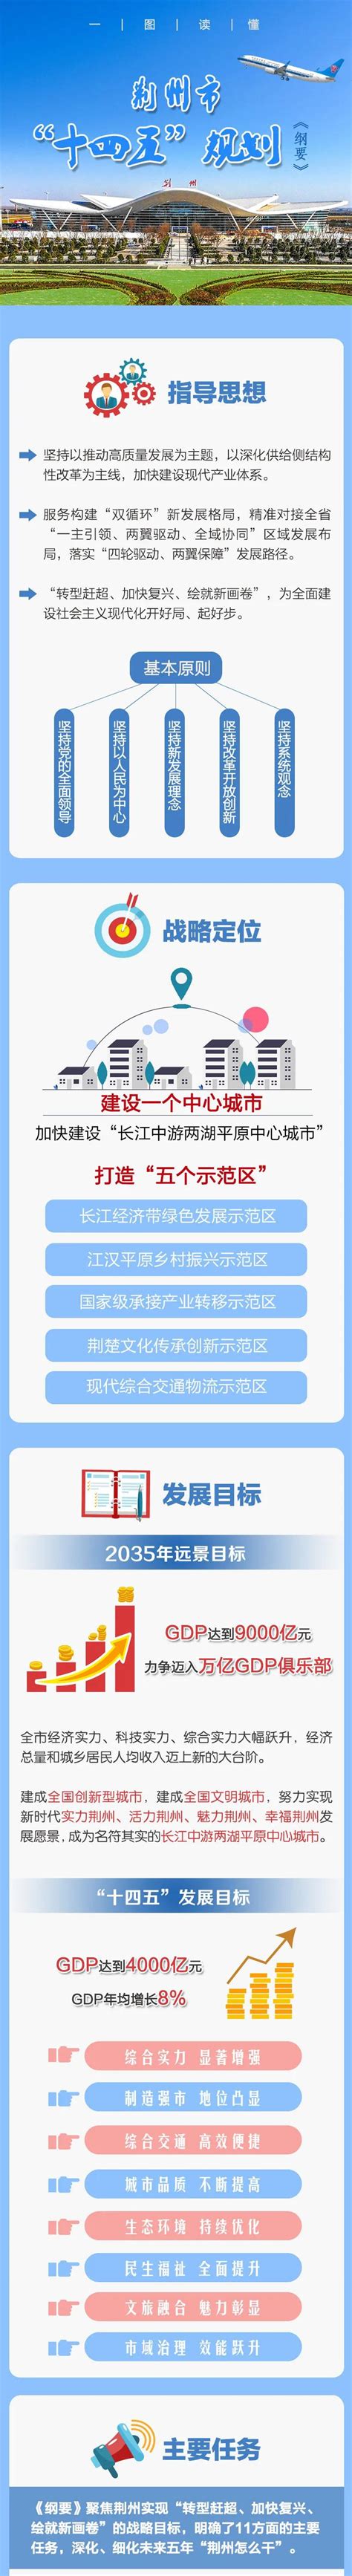 荆州市人民政府门户网站新版上线 - 湖北省人民政府门户网站